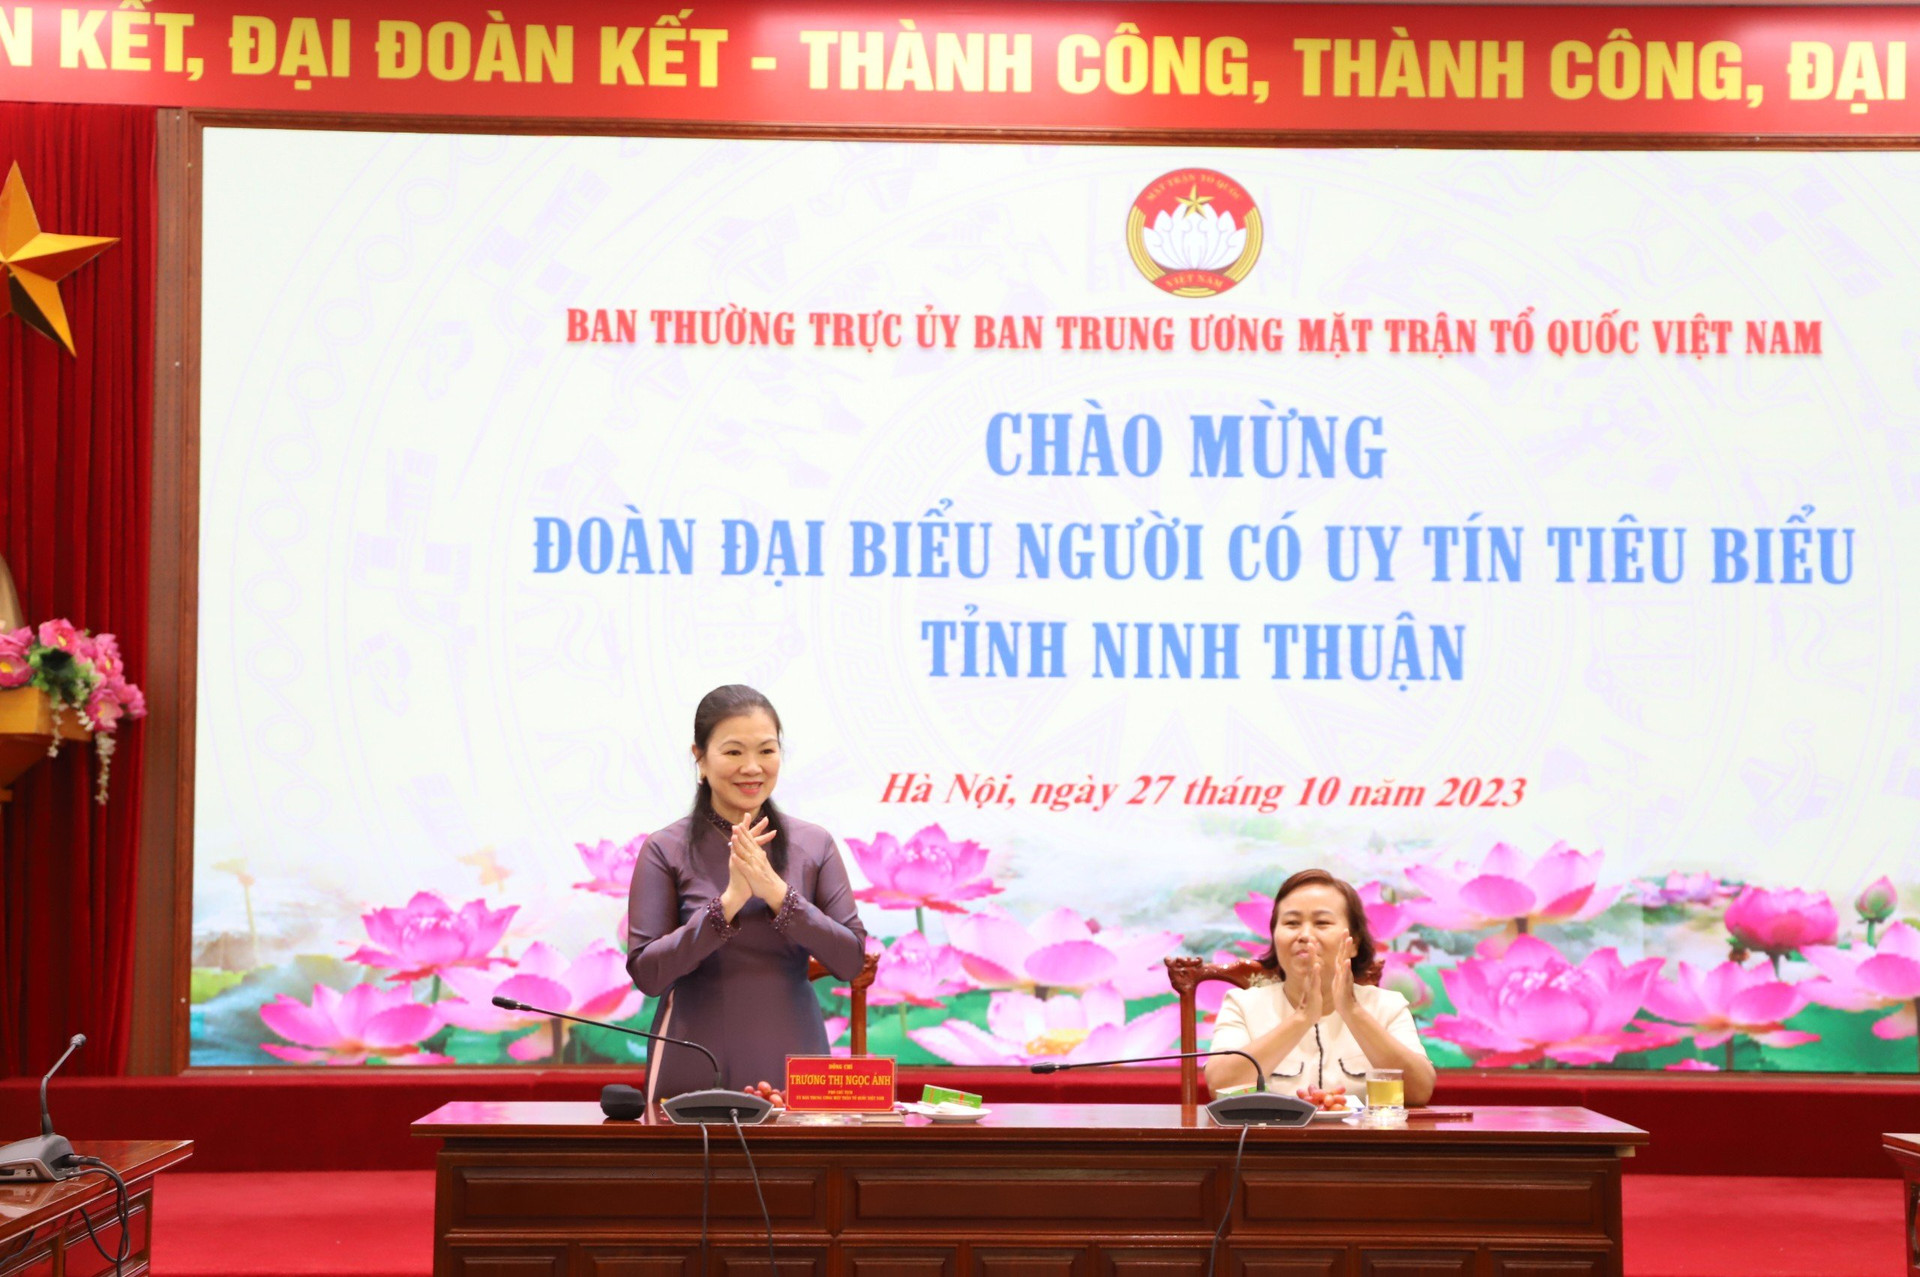 Phó Chủ tịch Trương Thị Ngọc Ánh thân mật tiếp Đoàn đại biểu người có uy tín tiêu biểu tỉnh Ninh Thuận.